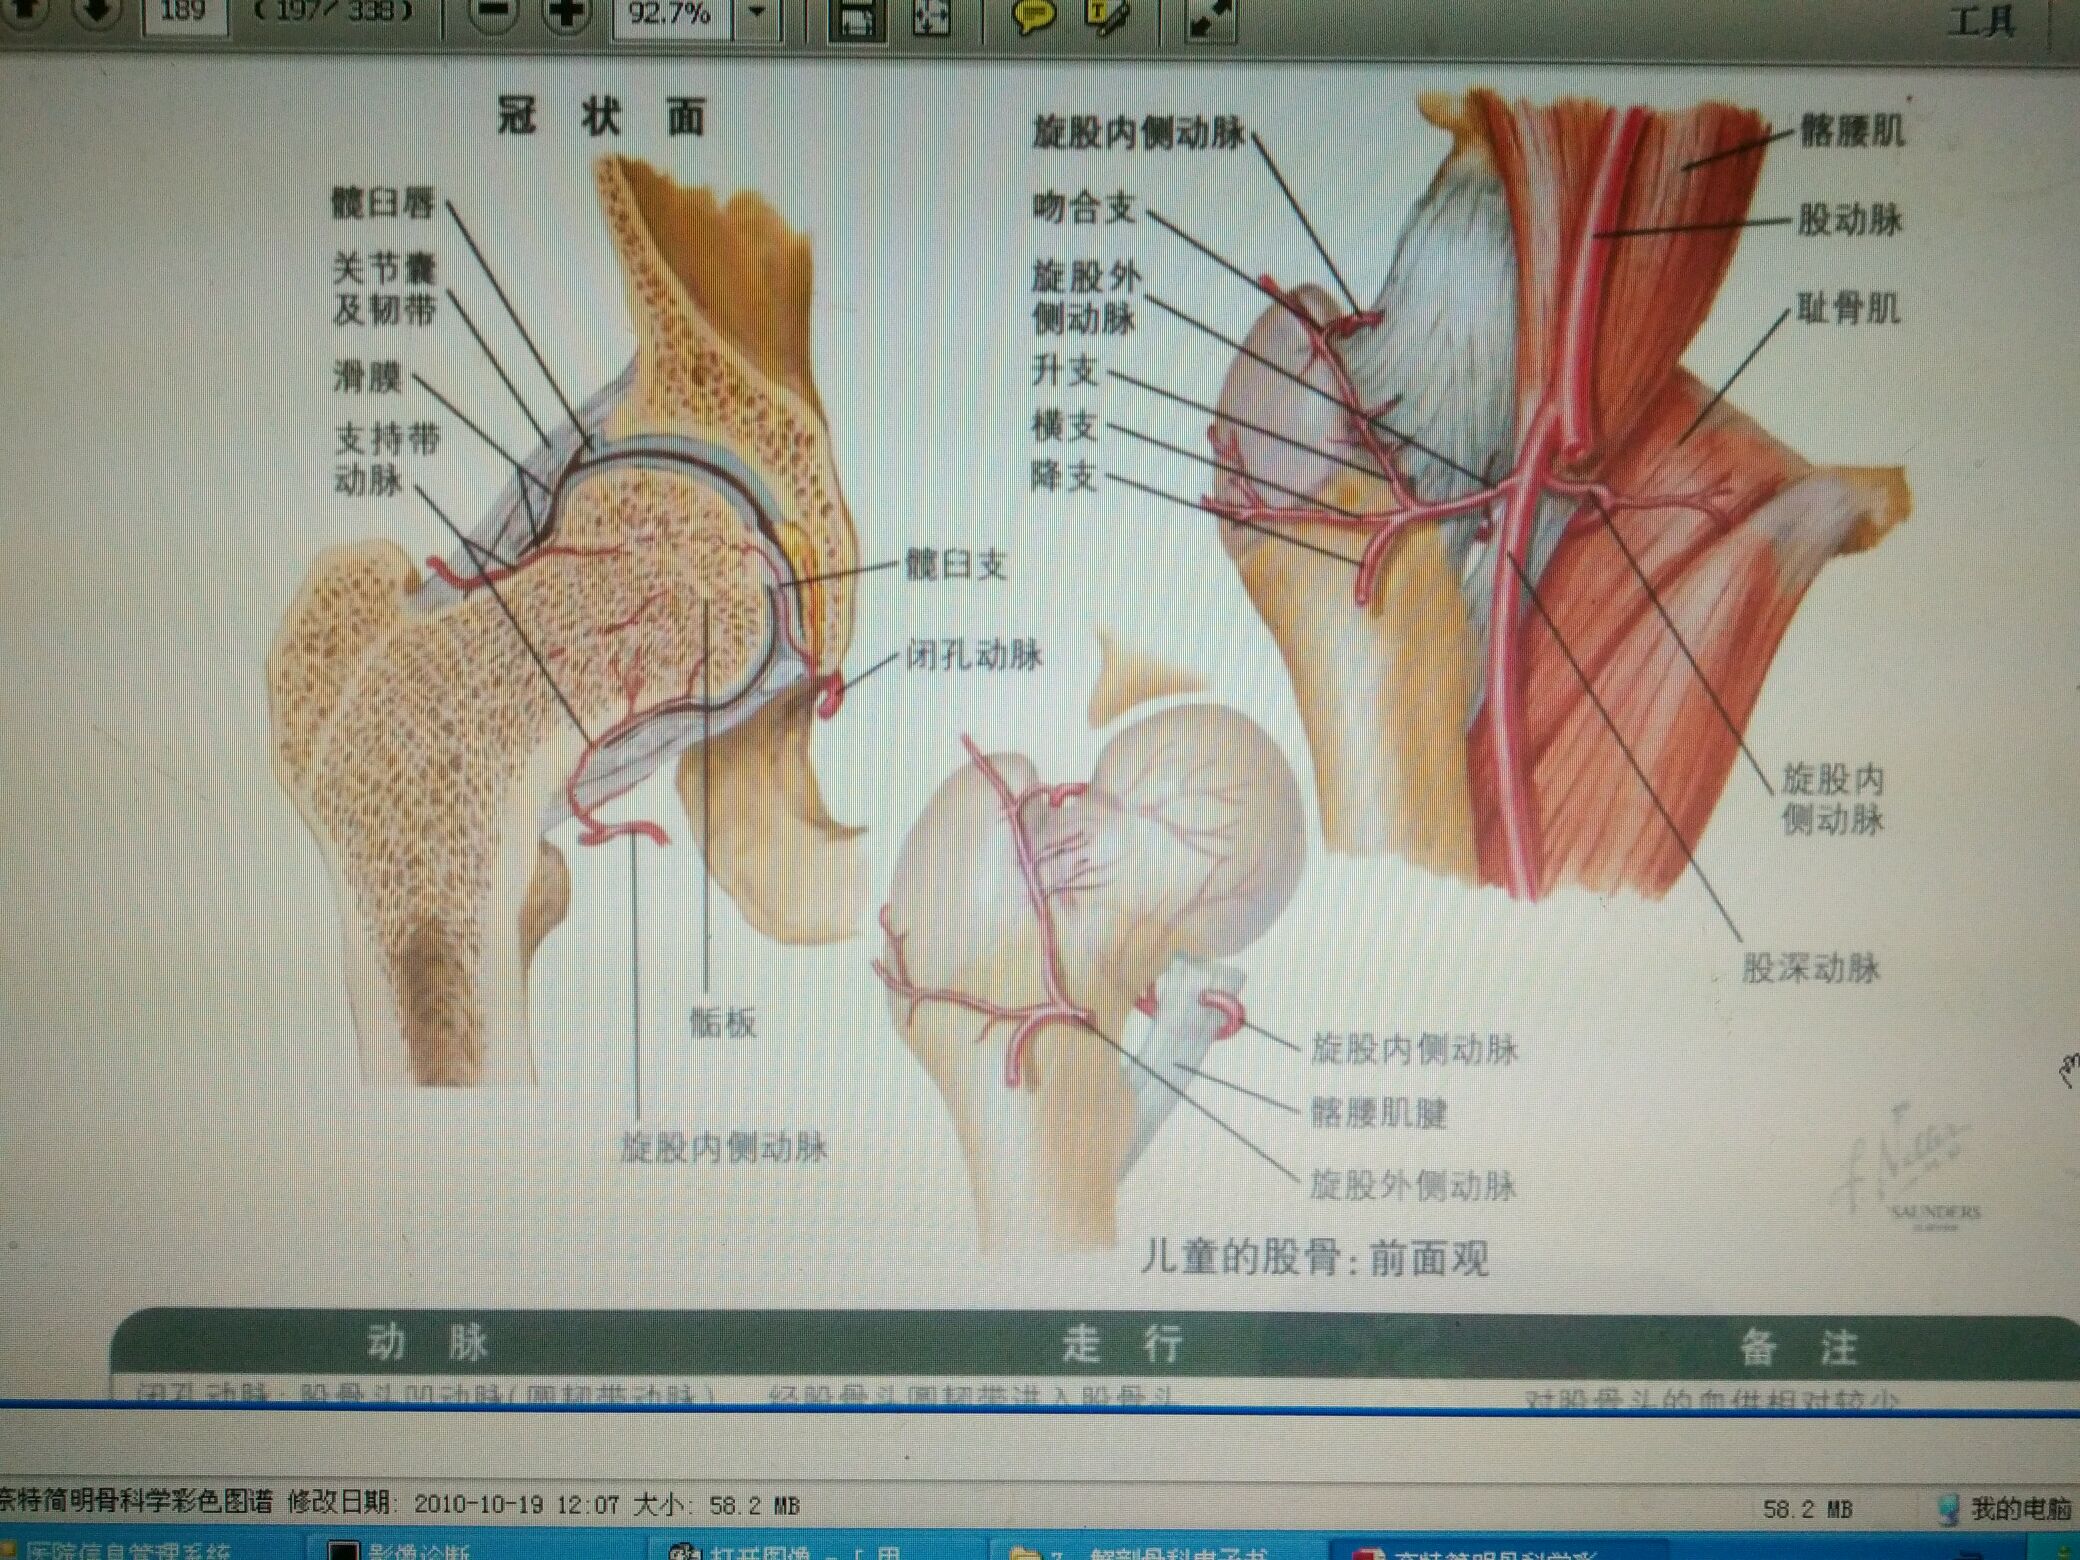 股骨髁间骨折解剖图图片